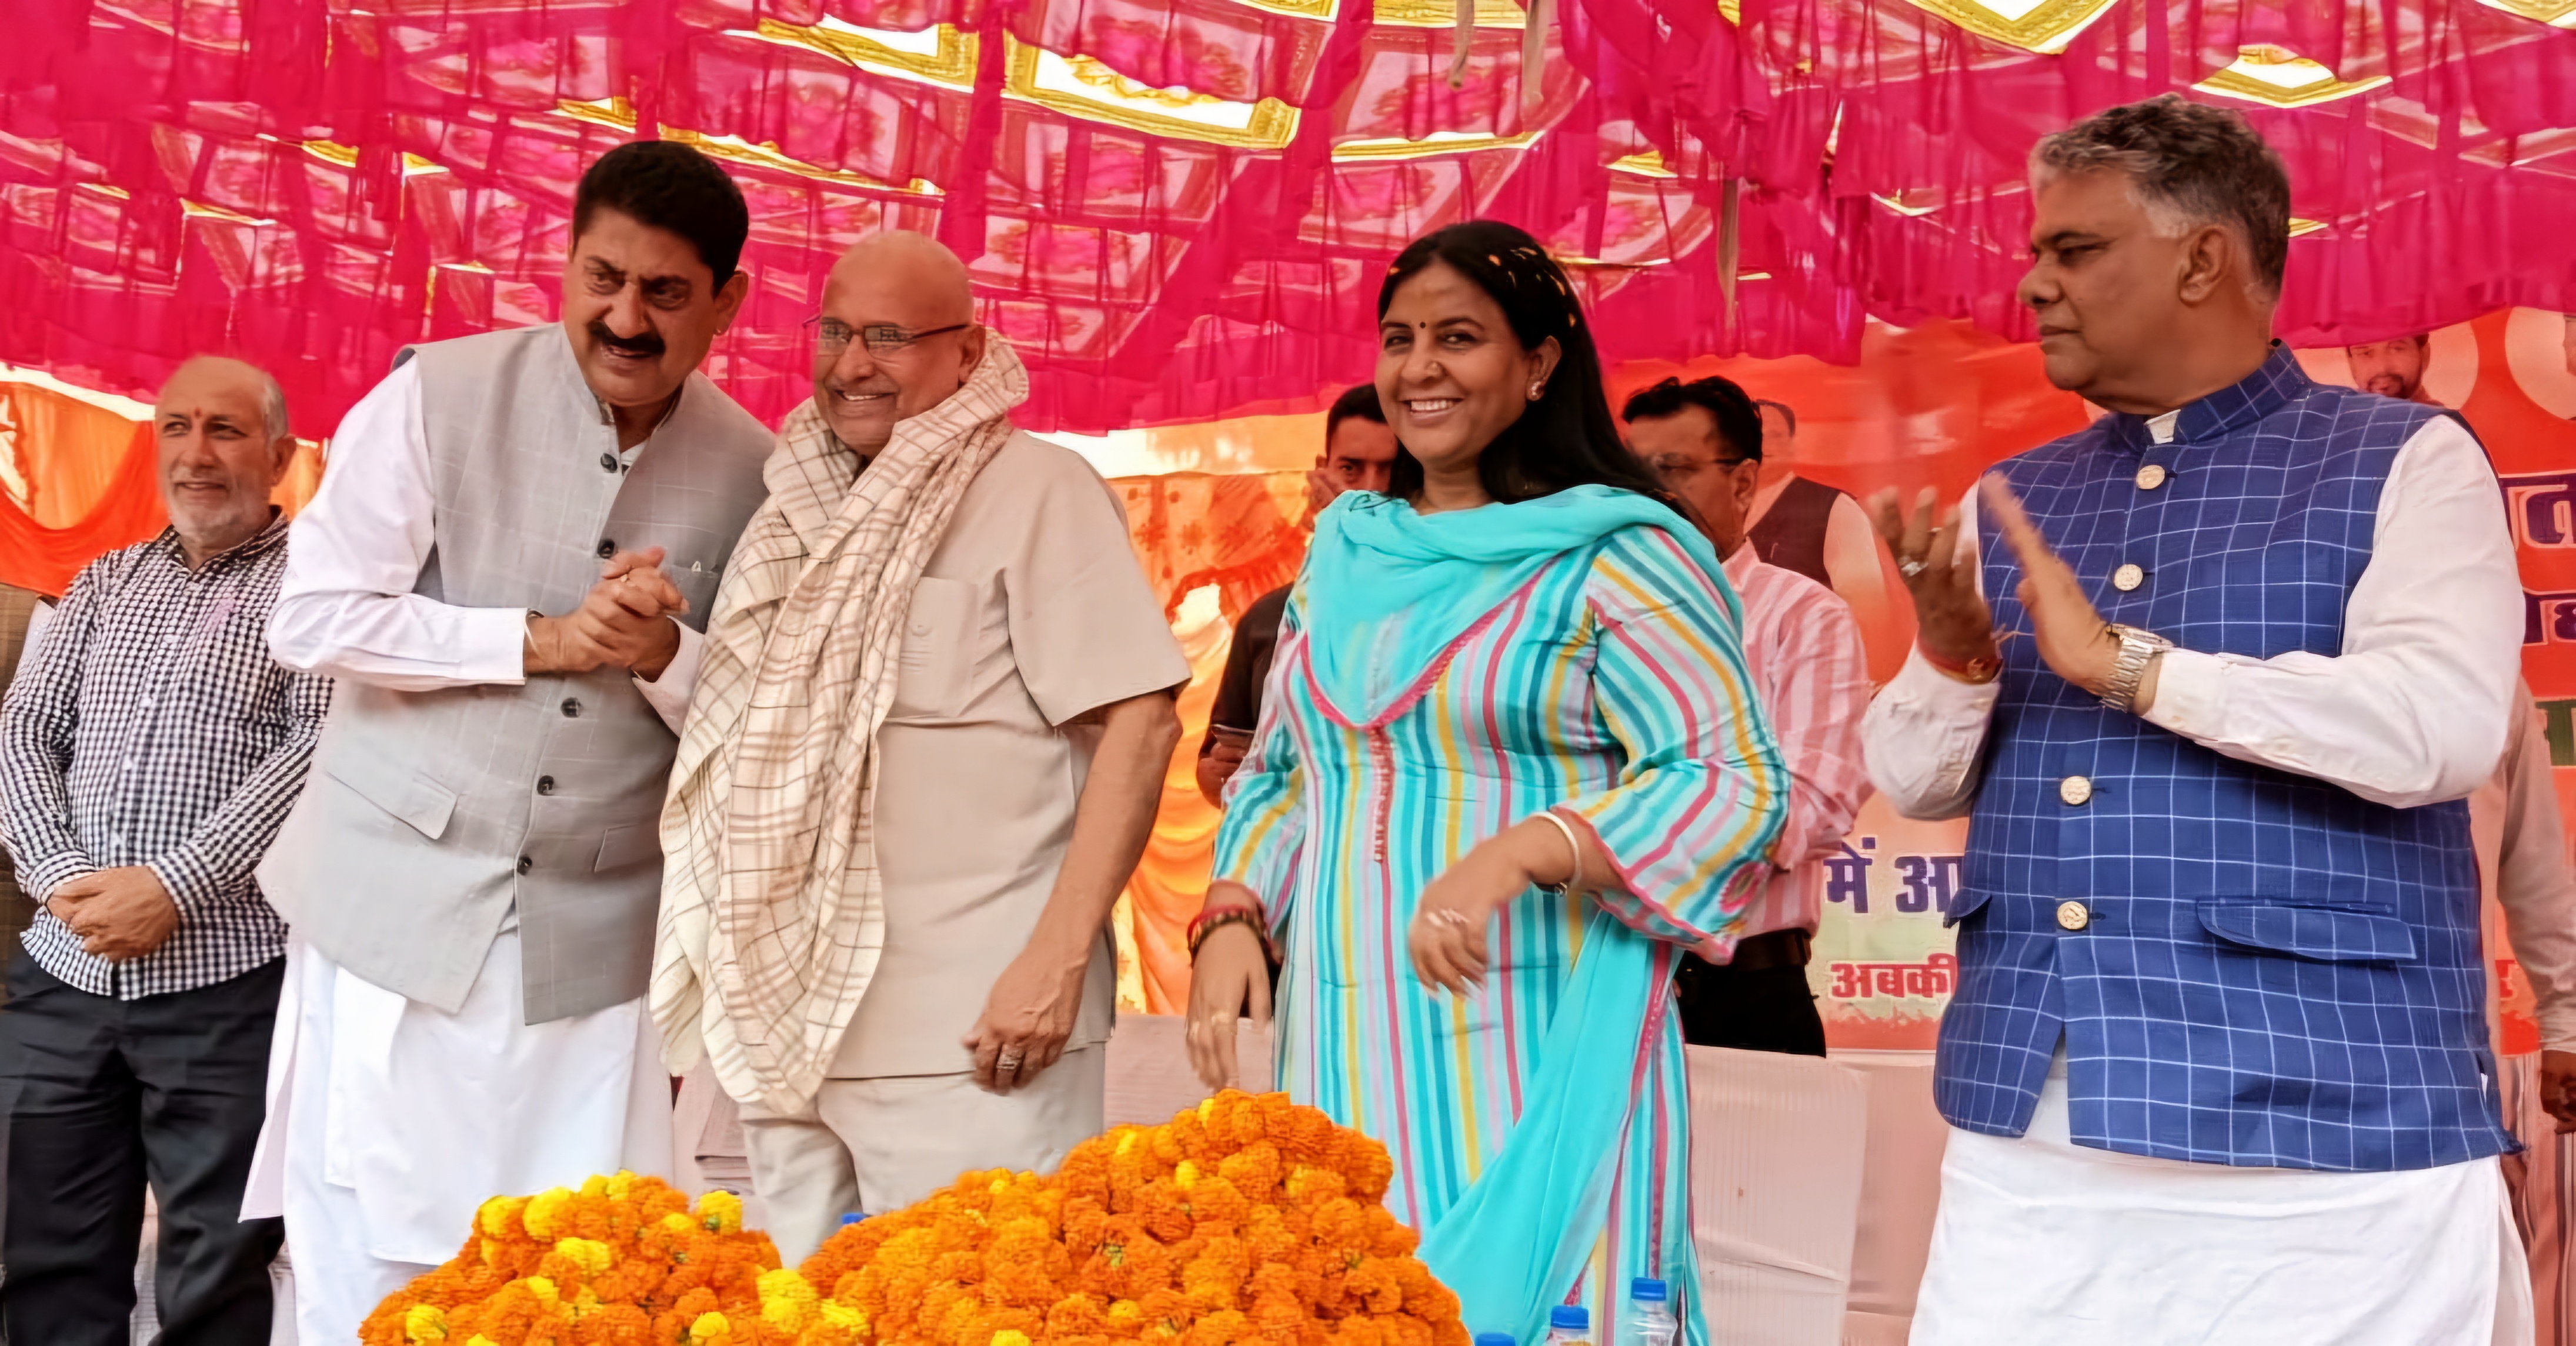 फतेहपुर में आयोजित पन्ना प्रमुख सम्मलेन में भाजपा प्रदेश प्रभारी का स्वागत करते हुए भाजपा नेता राकेश पठानिया।